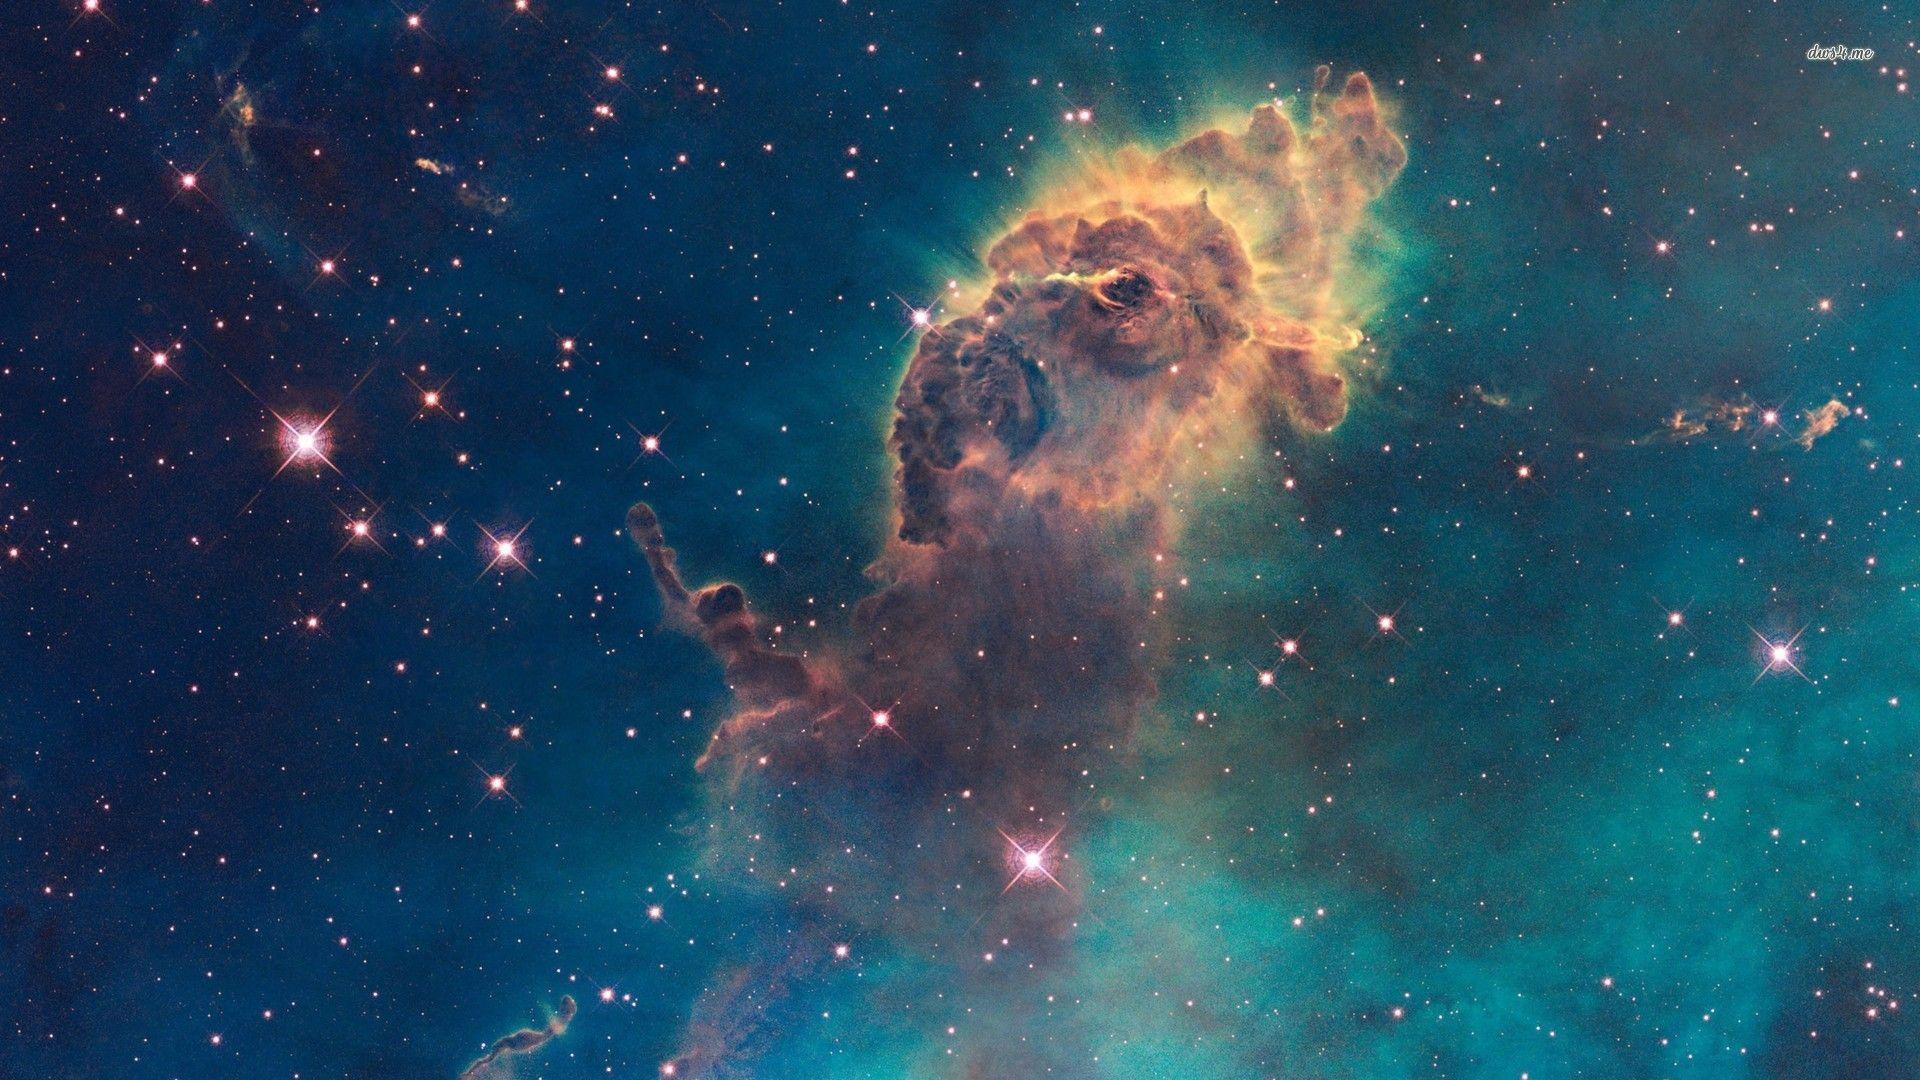 Galaxy Nebula Wallpapers Top Free Galaxy Nebula Backgrounds Wallpaperaccess 4548